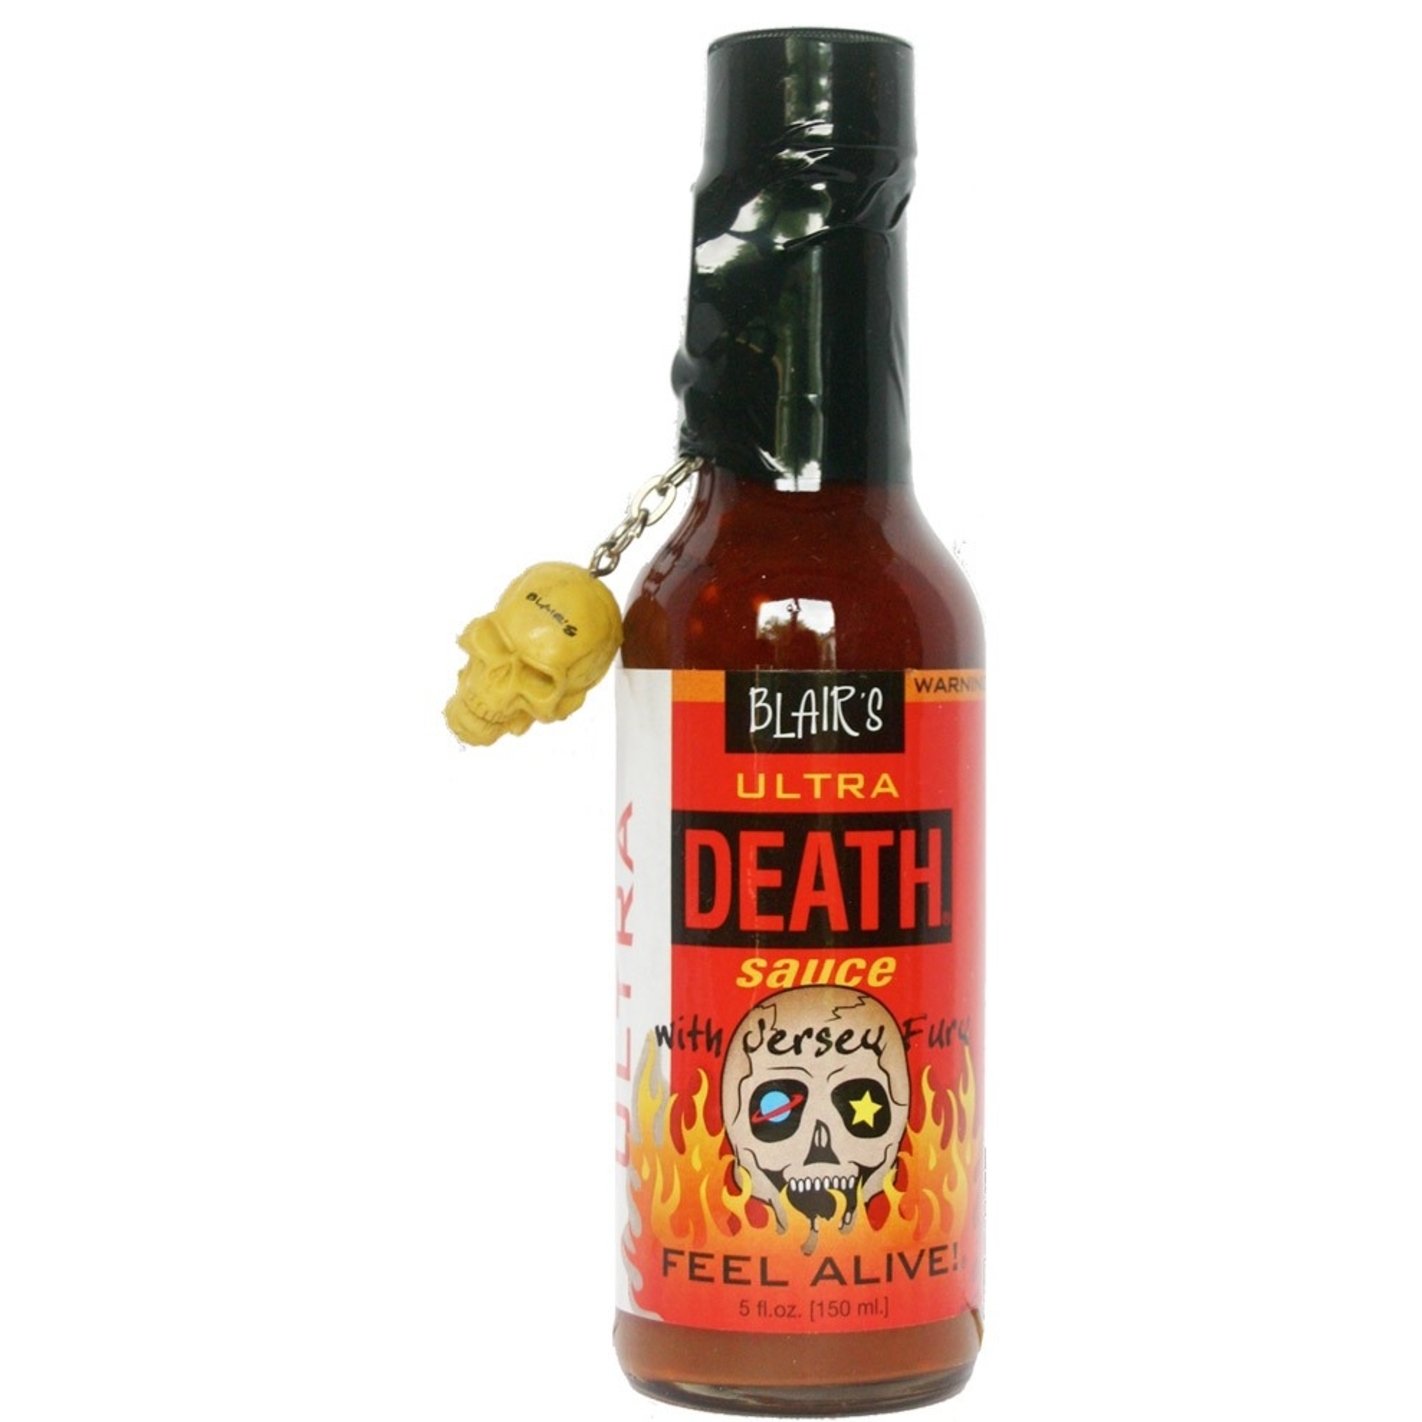 Blair s ultra death sauce